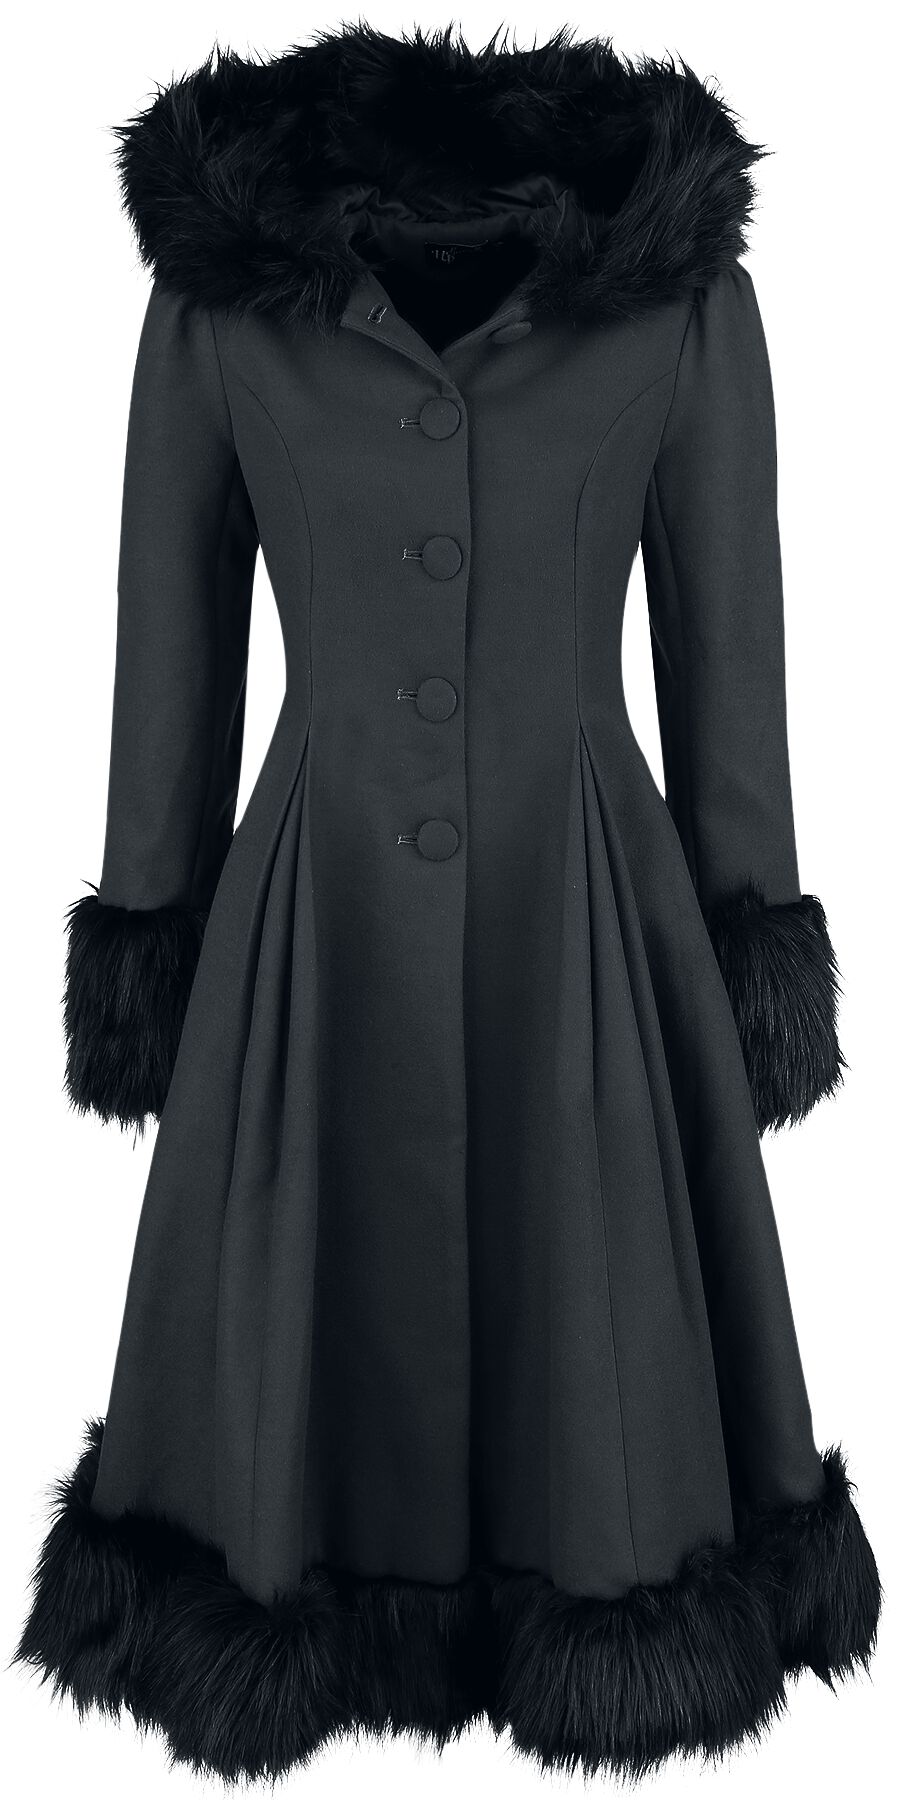 Hell Bunny Elvira Coat Mantel schwarz in XL